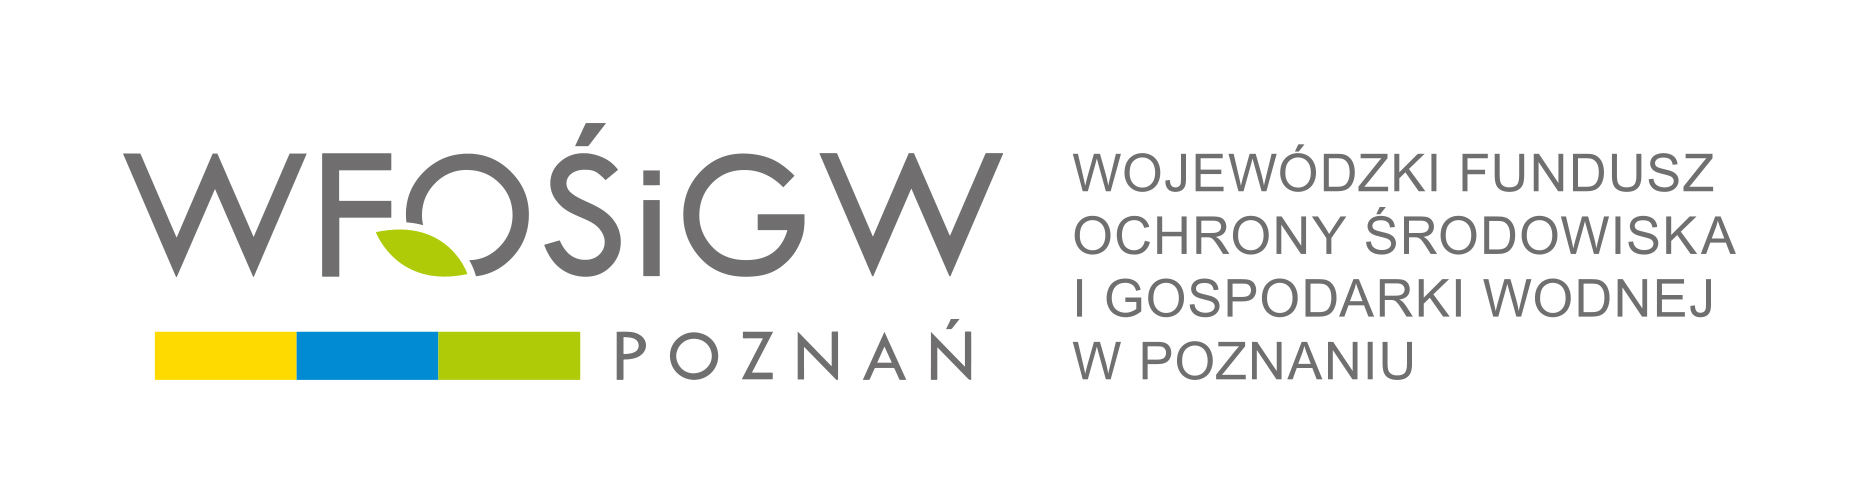 Projekt edukacji ekologicznej przy wsparciu WFOŚiGW w Poznaniu zrealizowany